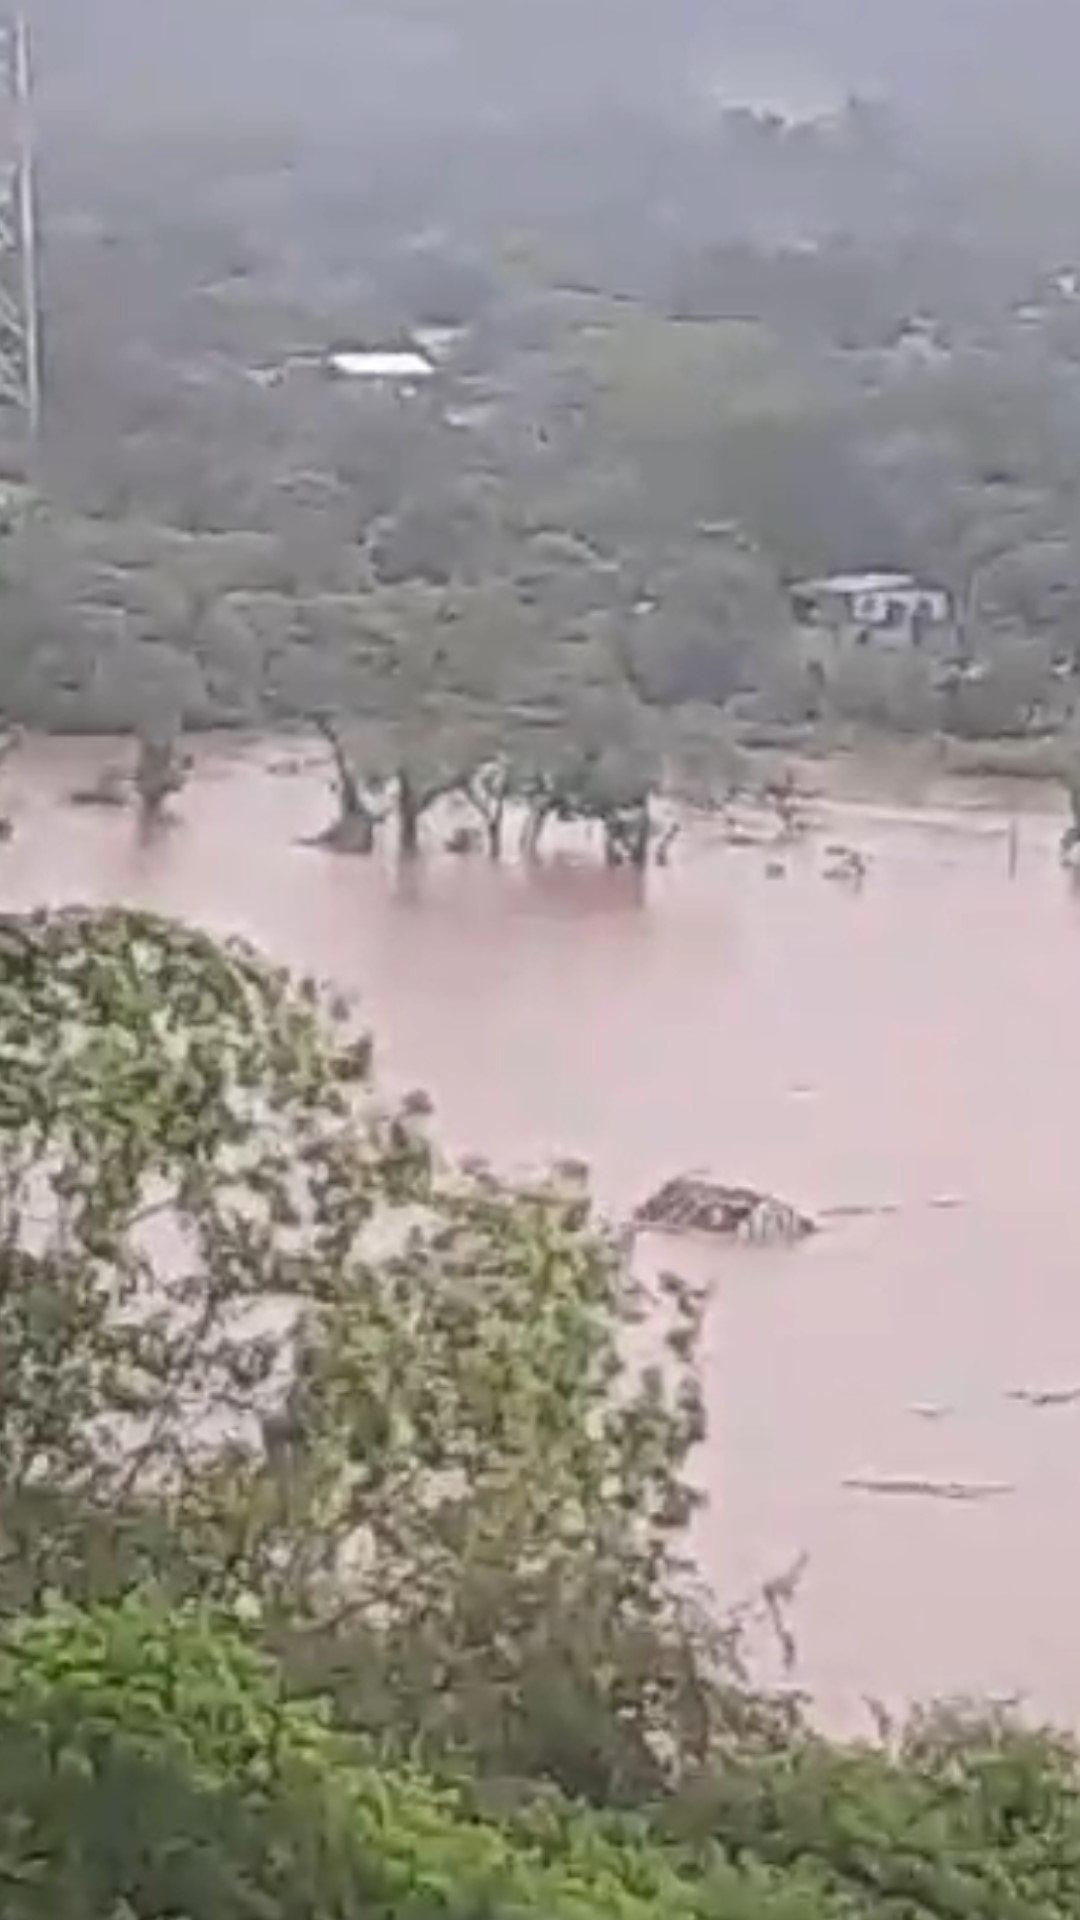    Portomauenses registram momento em que casa é levada pelas águas do Rio Uruguai